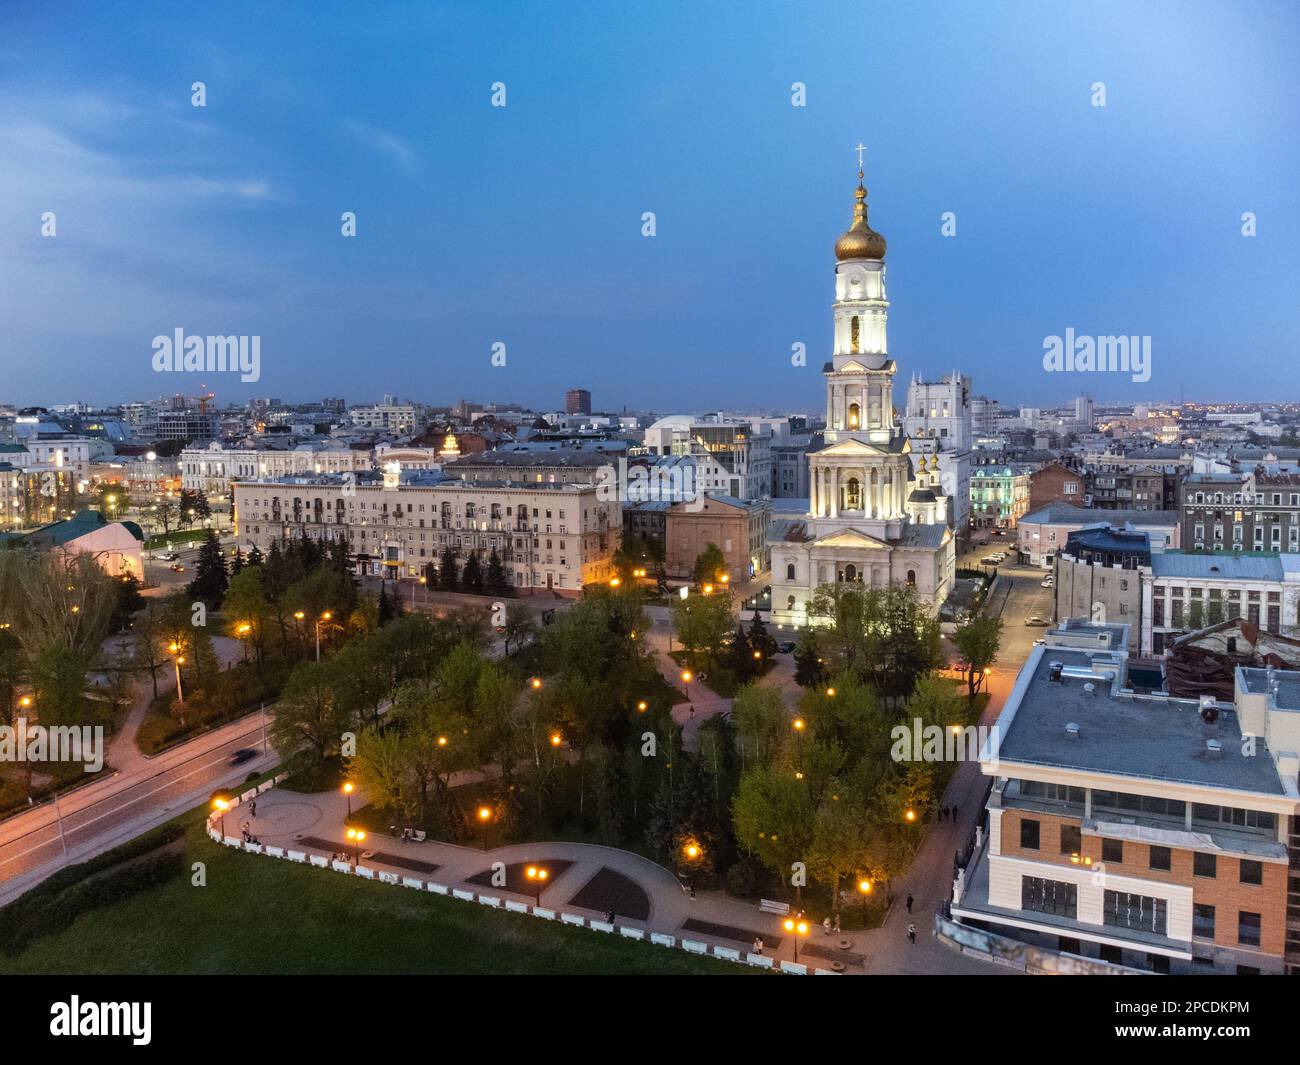 Cathédrale de Dormition aérienne avec dôme doré et clocher sur ciel bleu dans les lumières du soir du centre-ville de Kharkiv, Ukraine. Banque D'Images